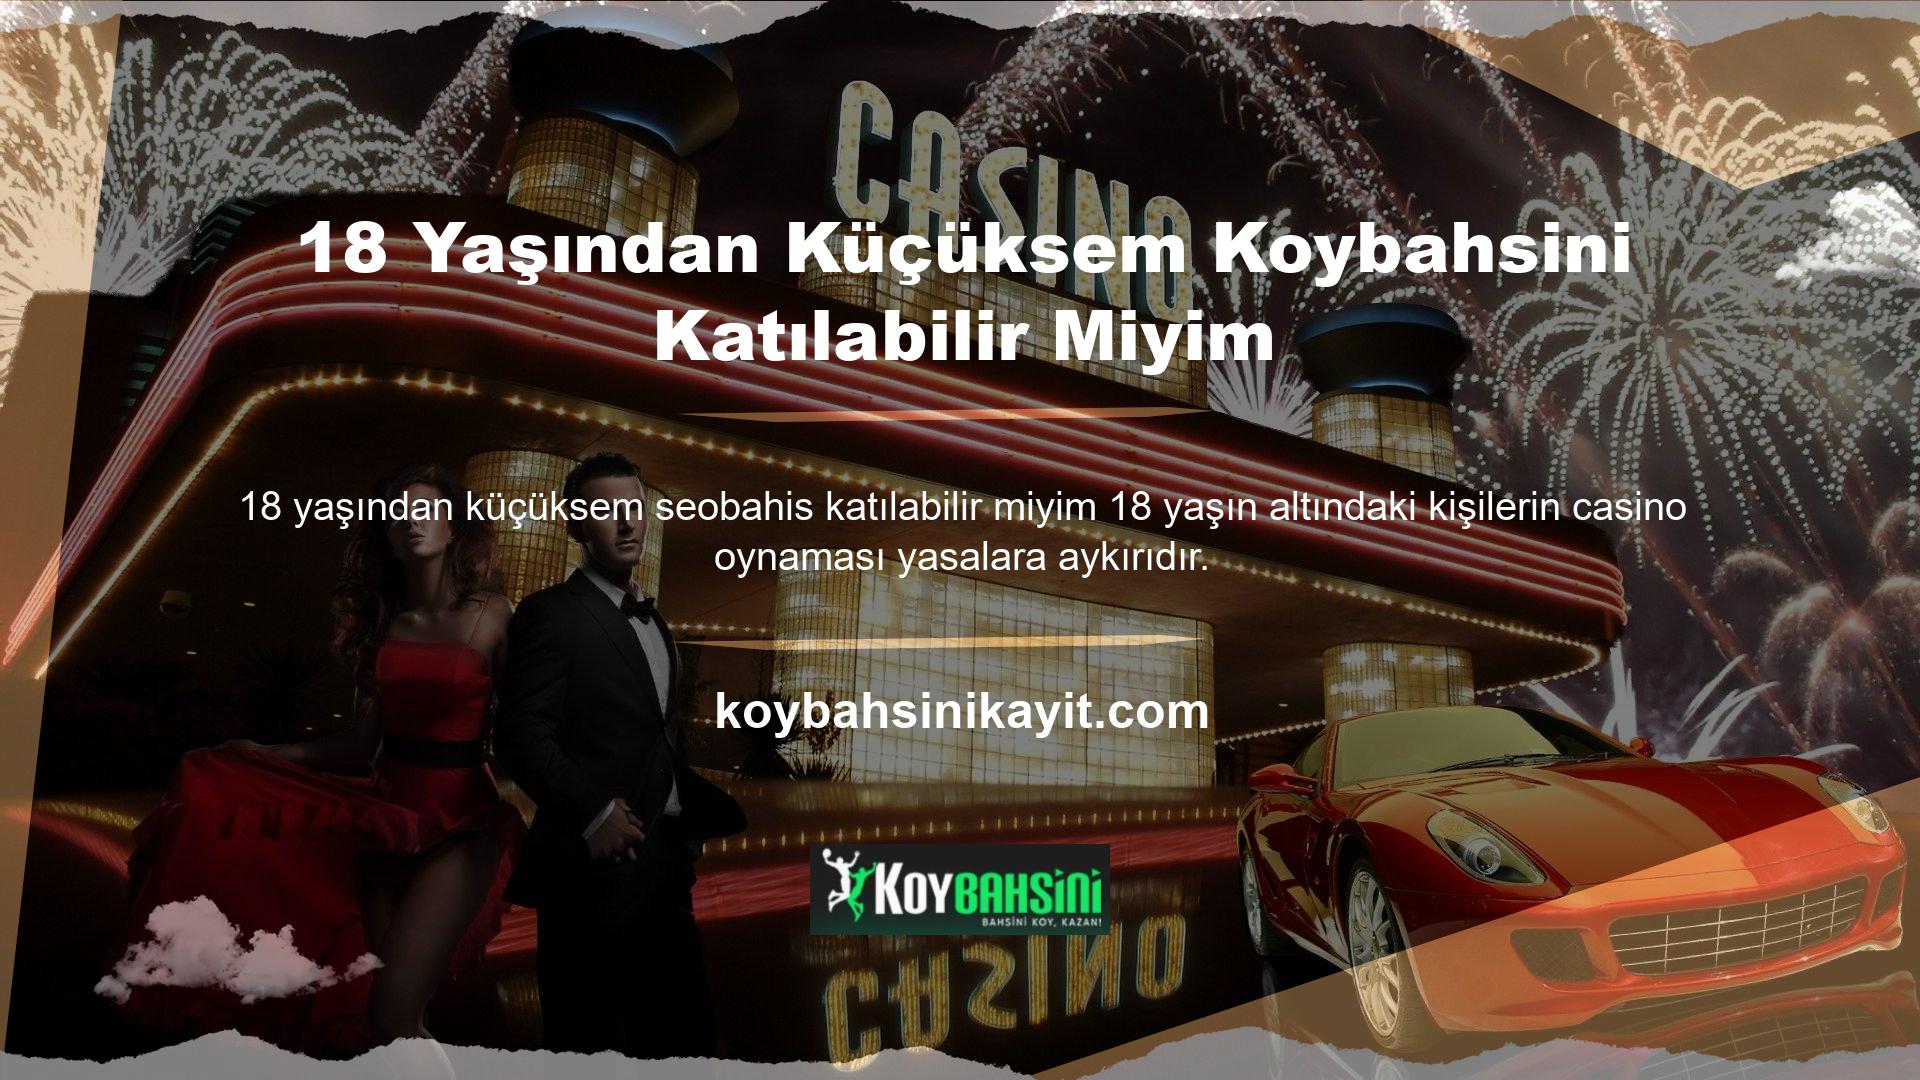 Koybahsini sürekli izlenen bir oyun sitesidir